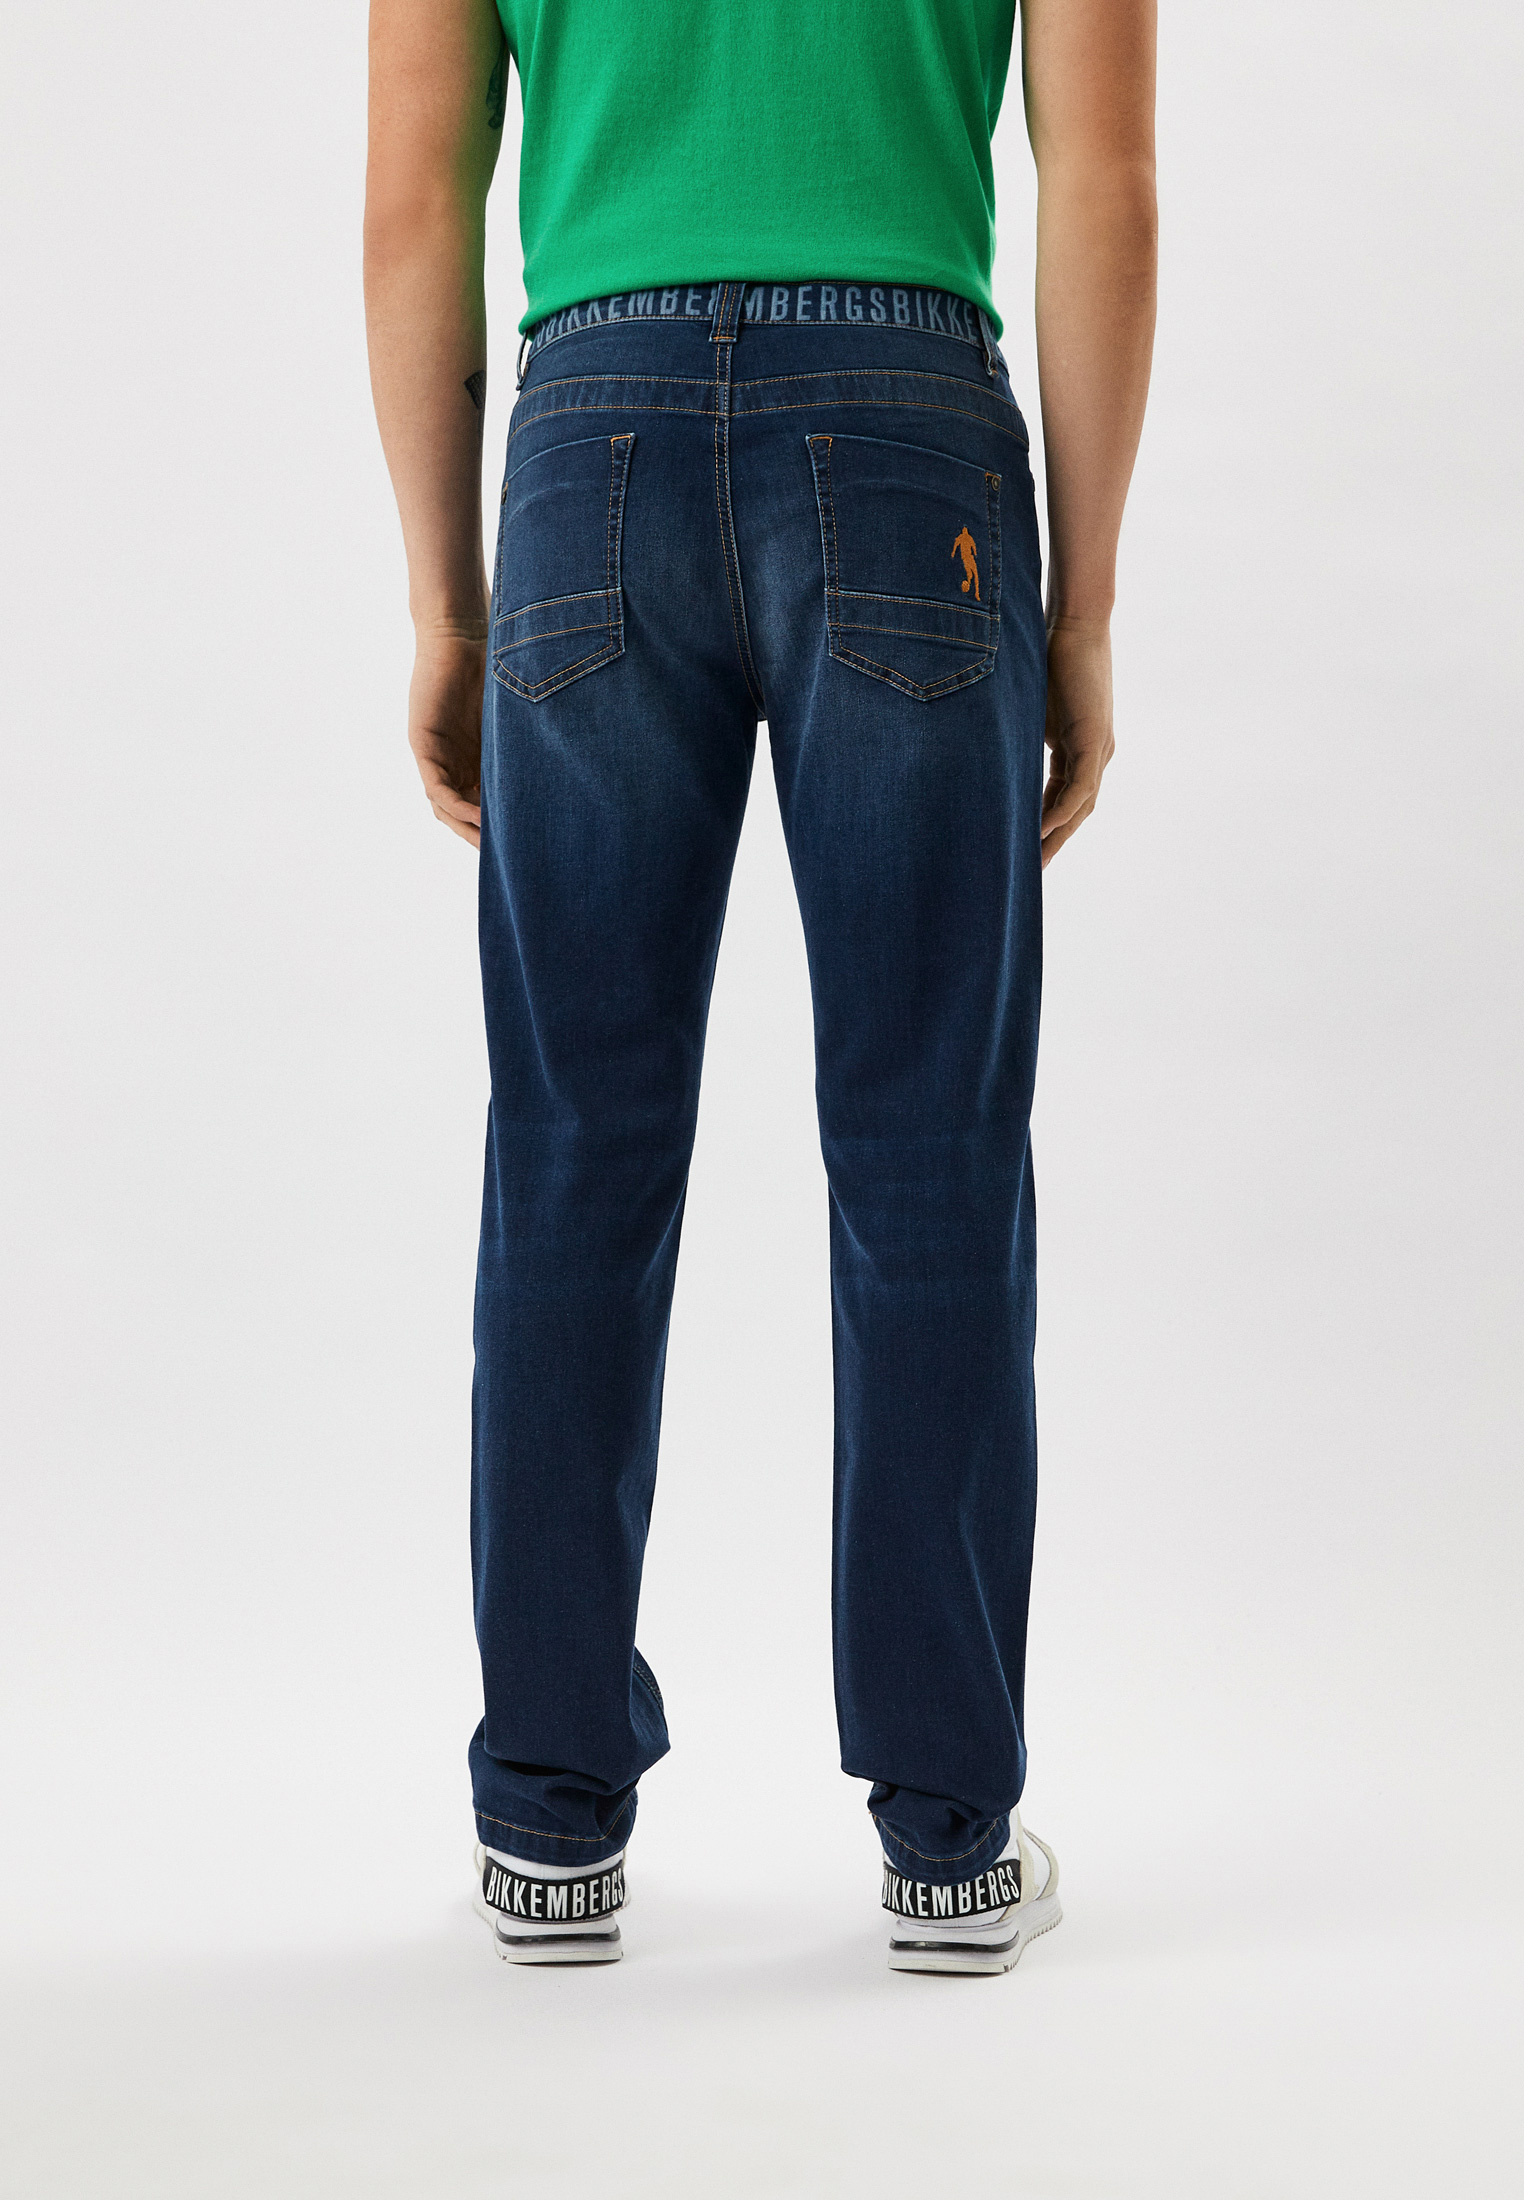 Мужские прямые джинсы Bikkembergs (Биккембергс) CQ10272S3511: изображение 7